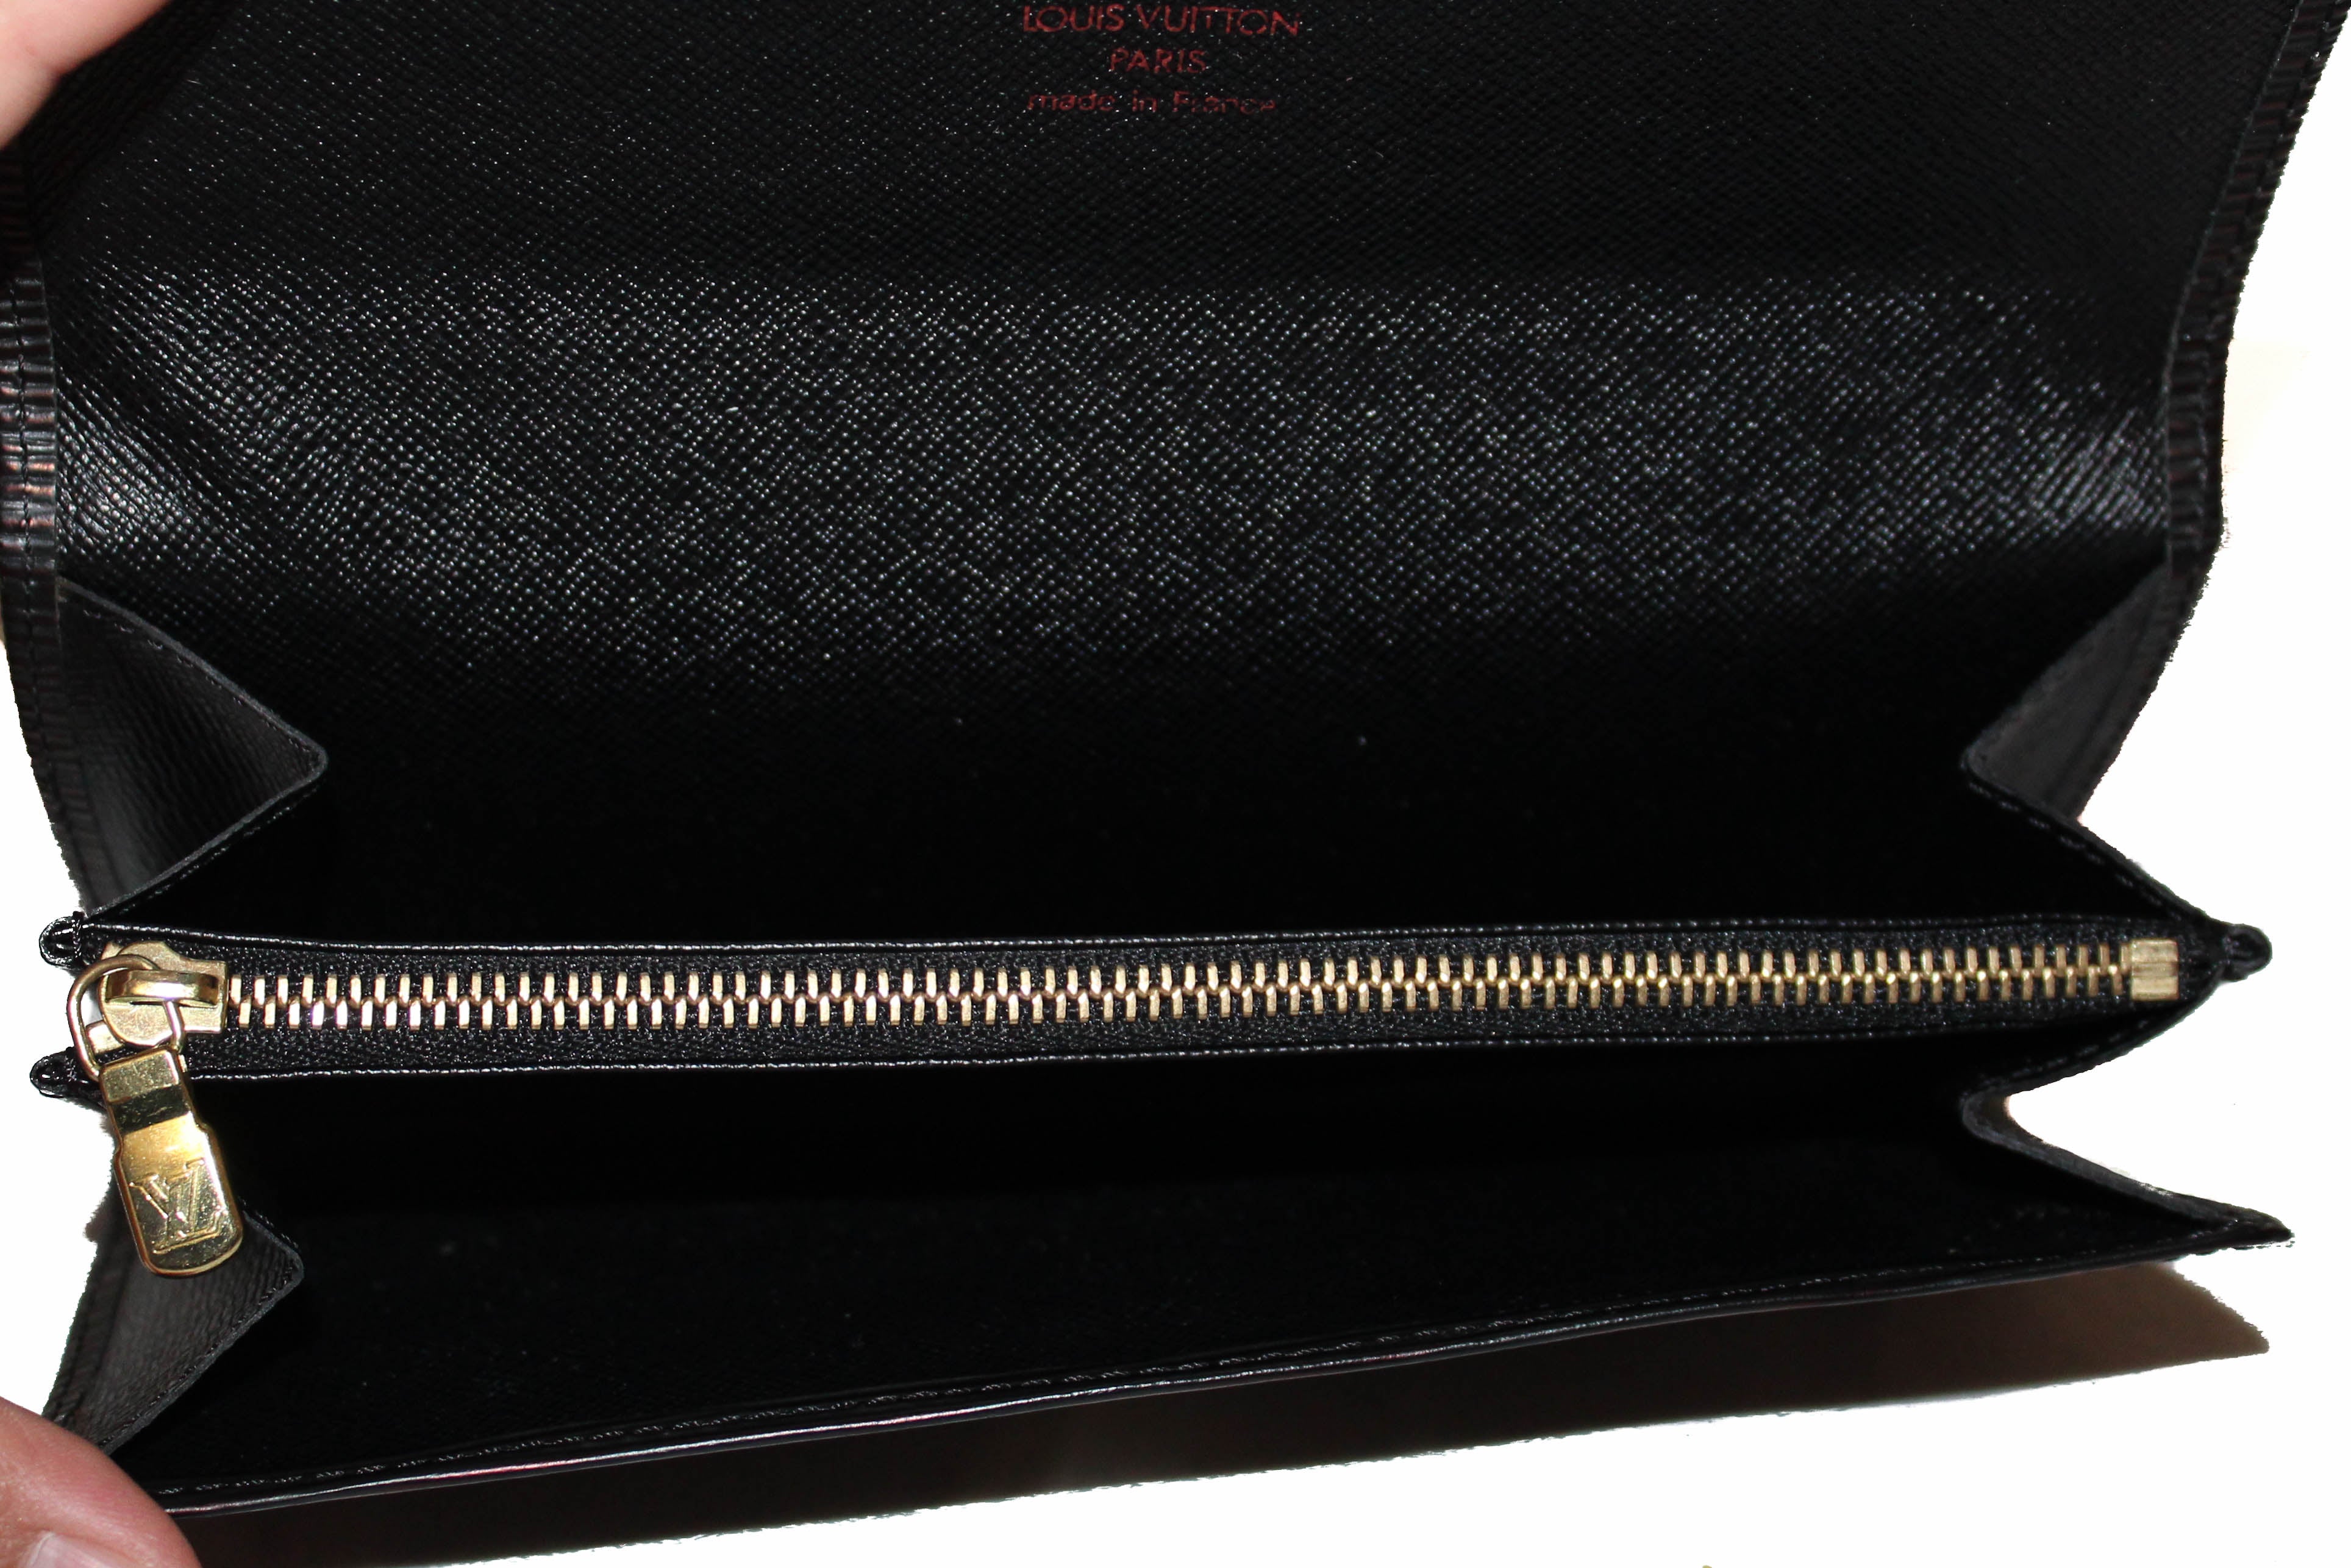 Authentic Louis Vuitton Black Epi Leather Sarah Wallet